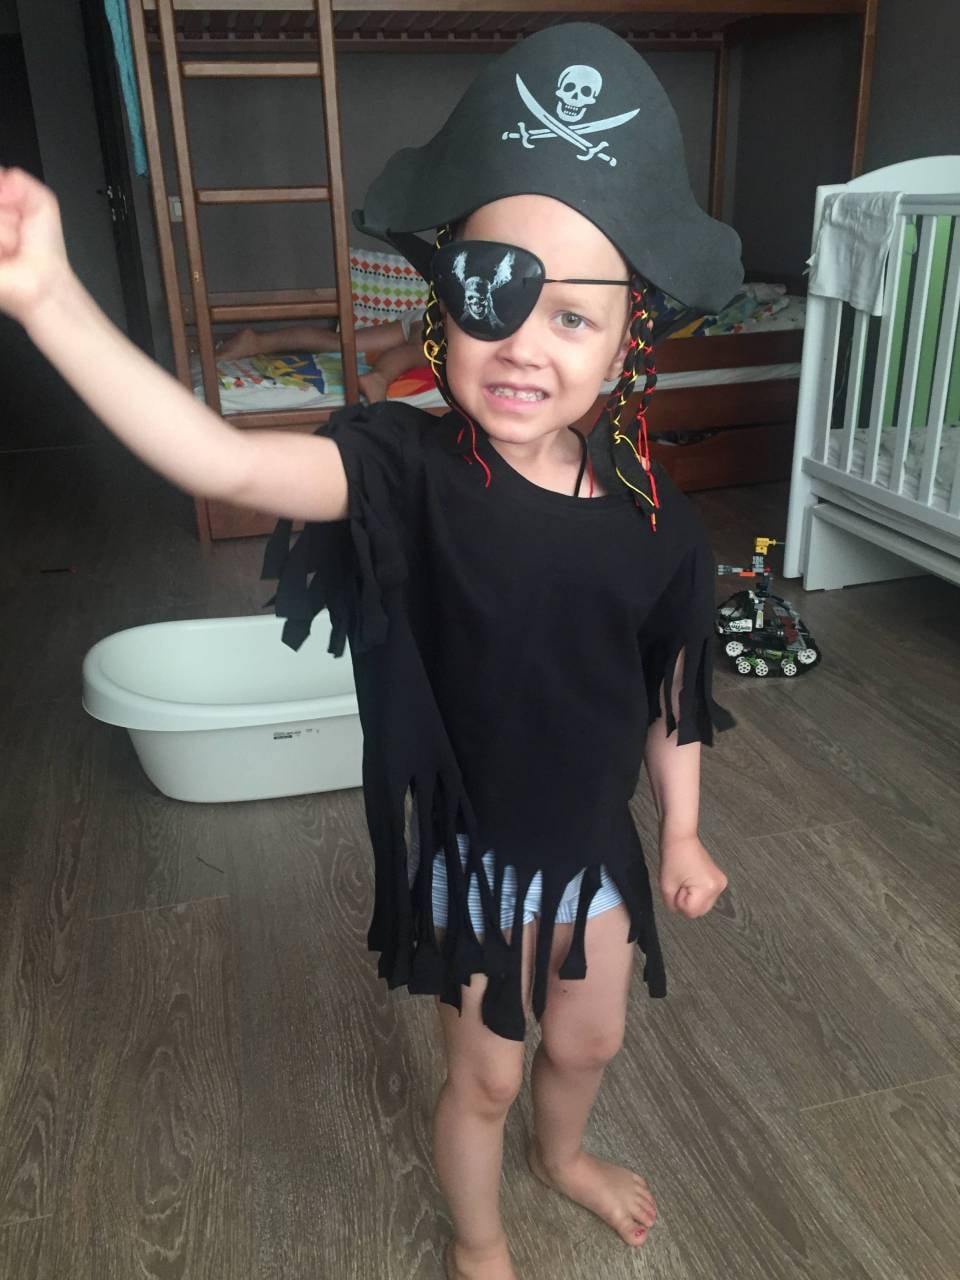 Daria will wie ein gesundes Kind spielen, hier verkleidet als Pirat